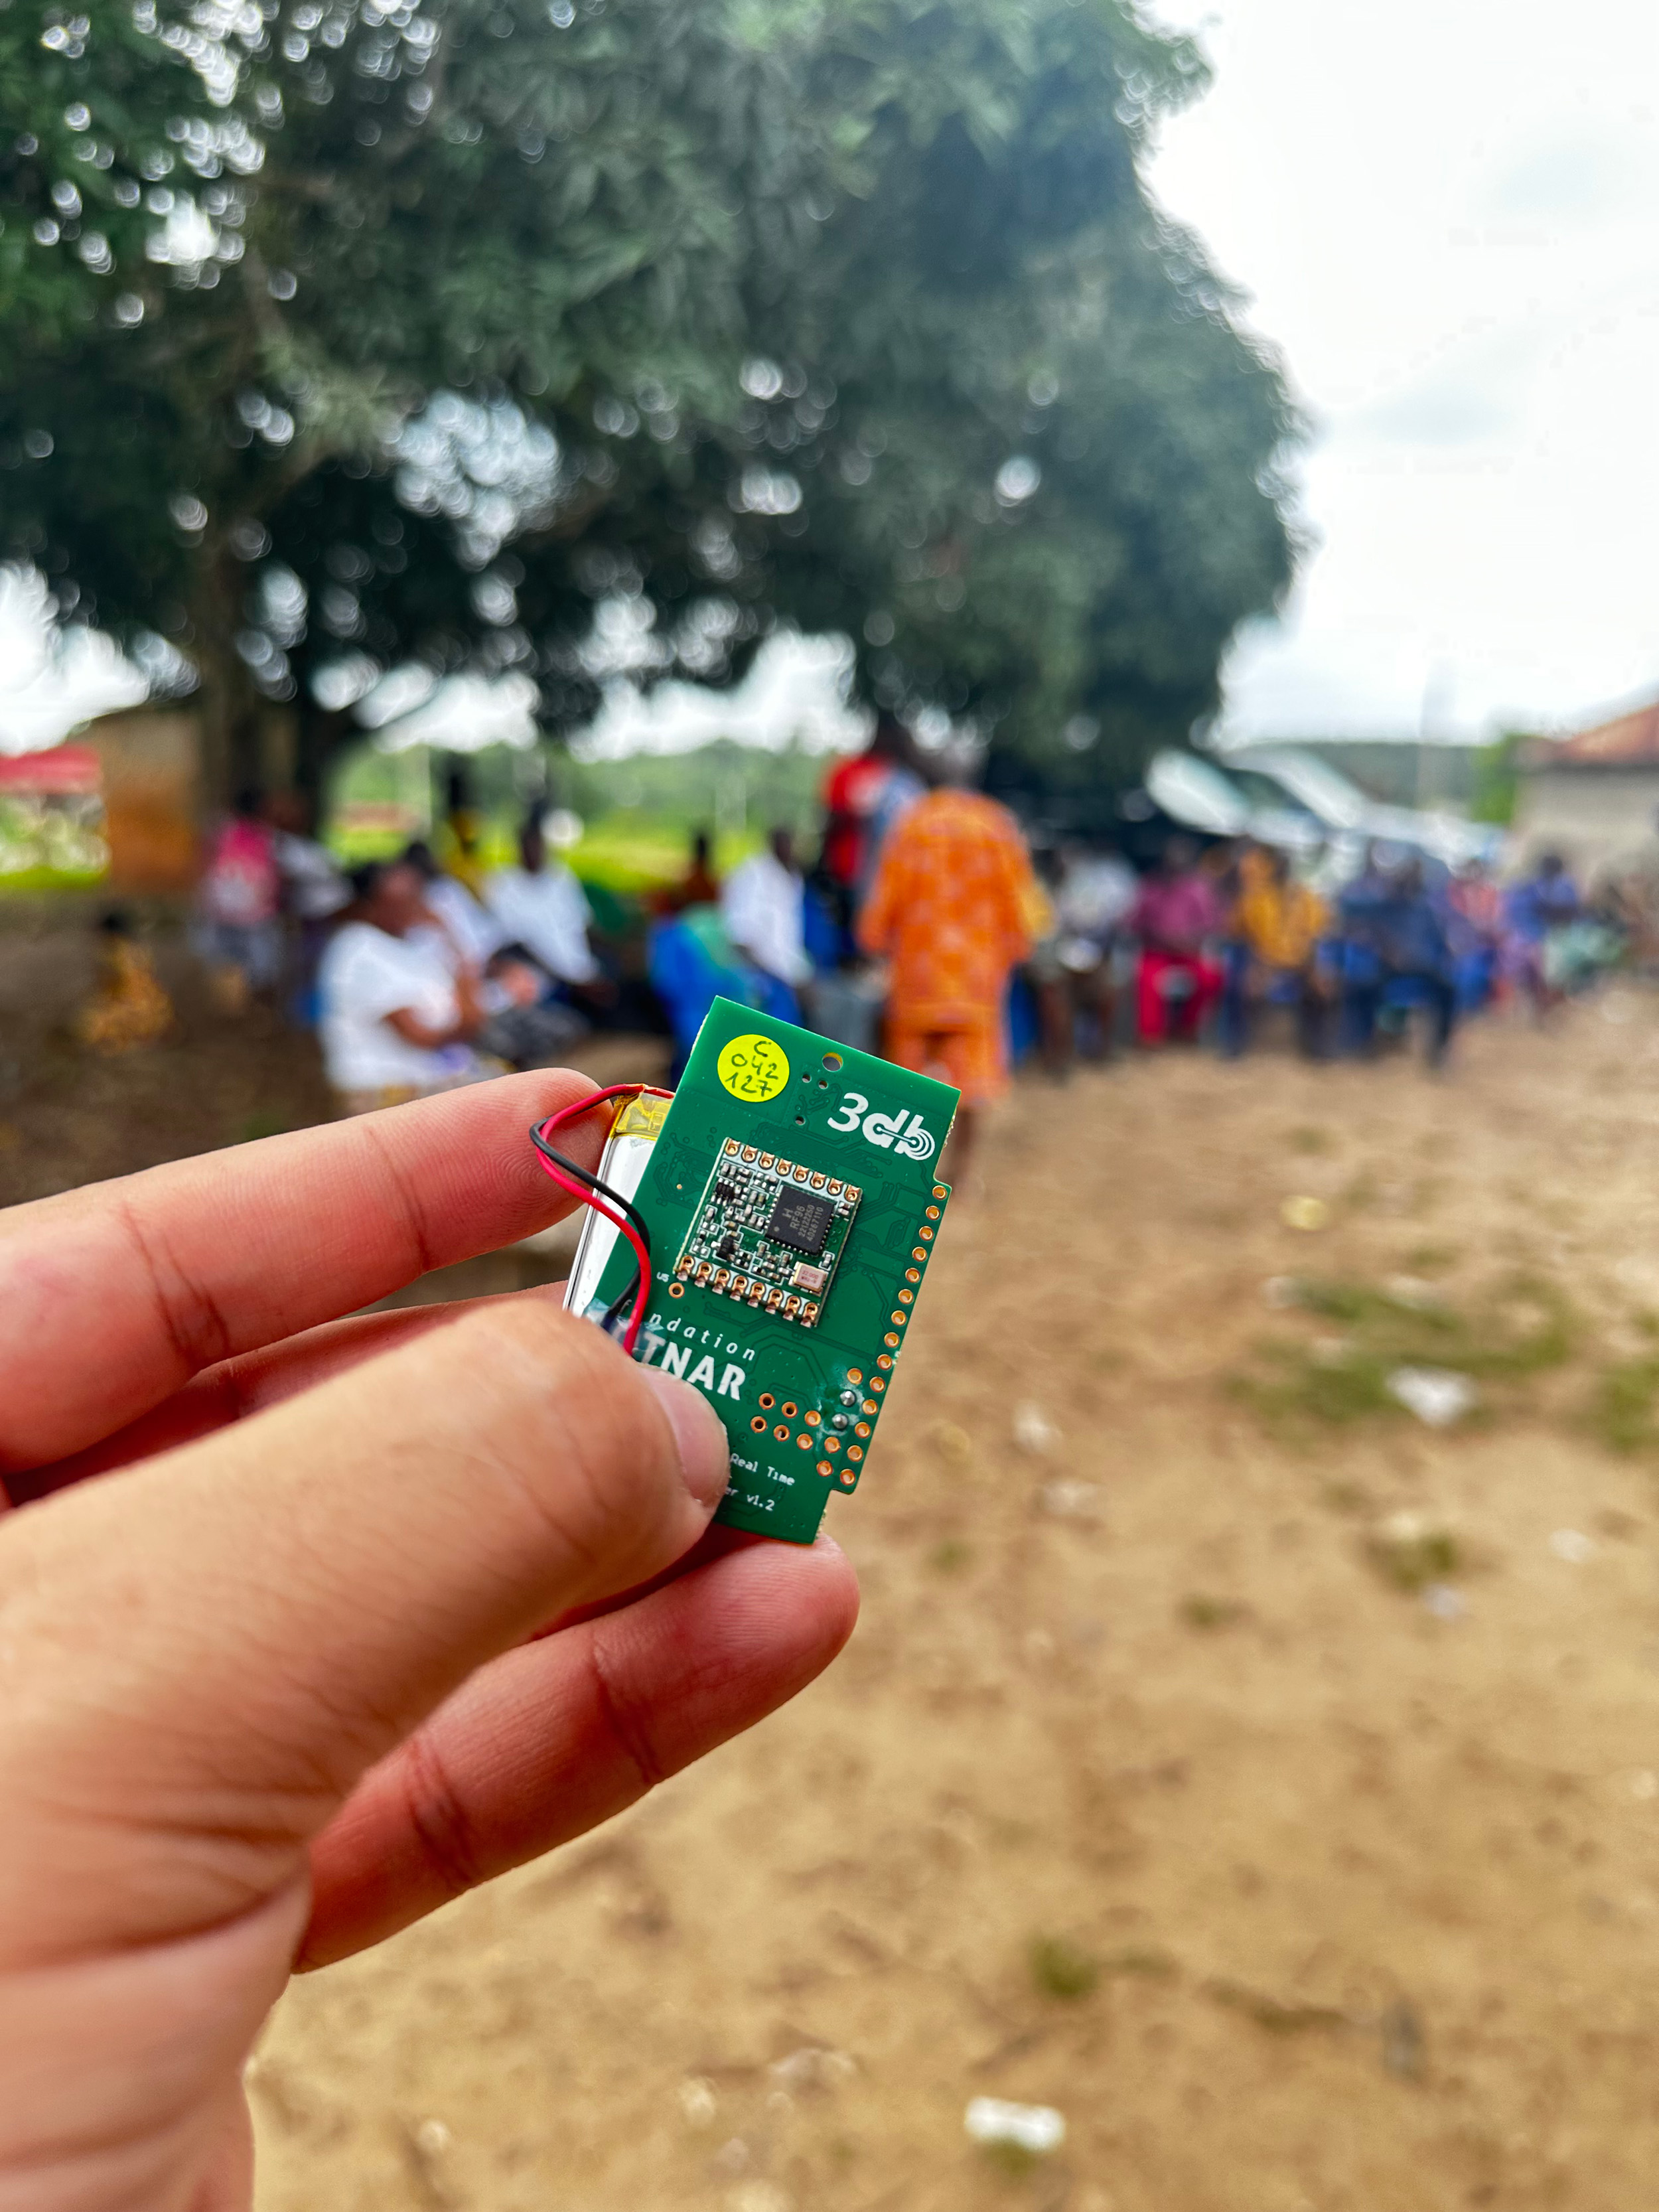 Vergrösserte Ansicht: Hand welche den kleinen grünen Sensor hält, im Hintergrund ist ein afrikanisches Dorf erkennbar.